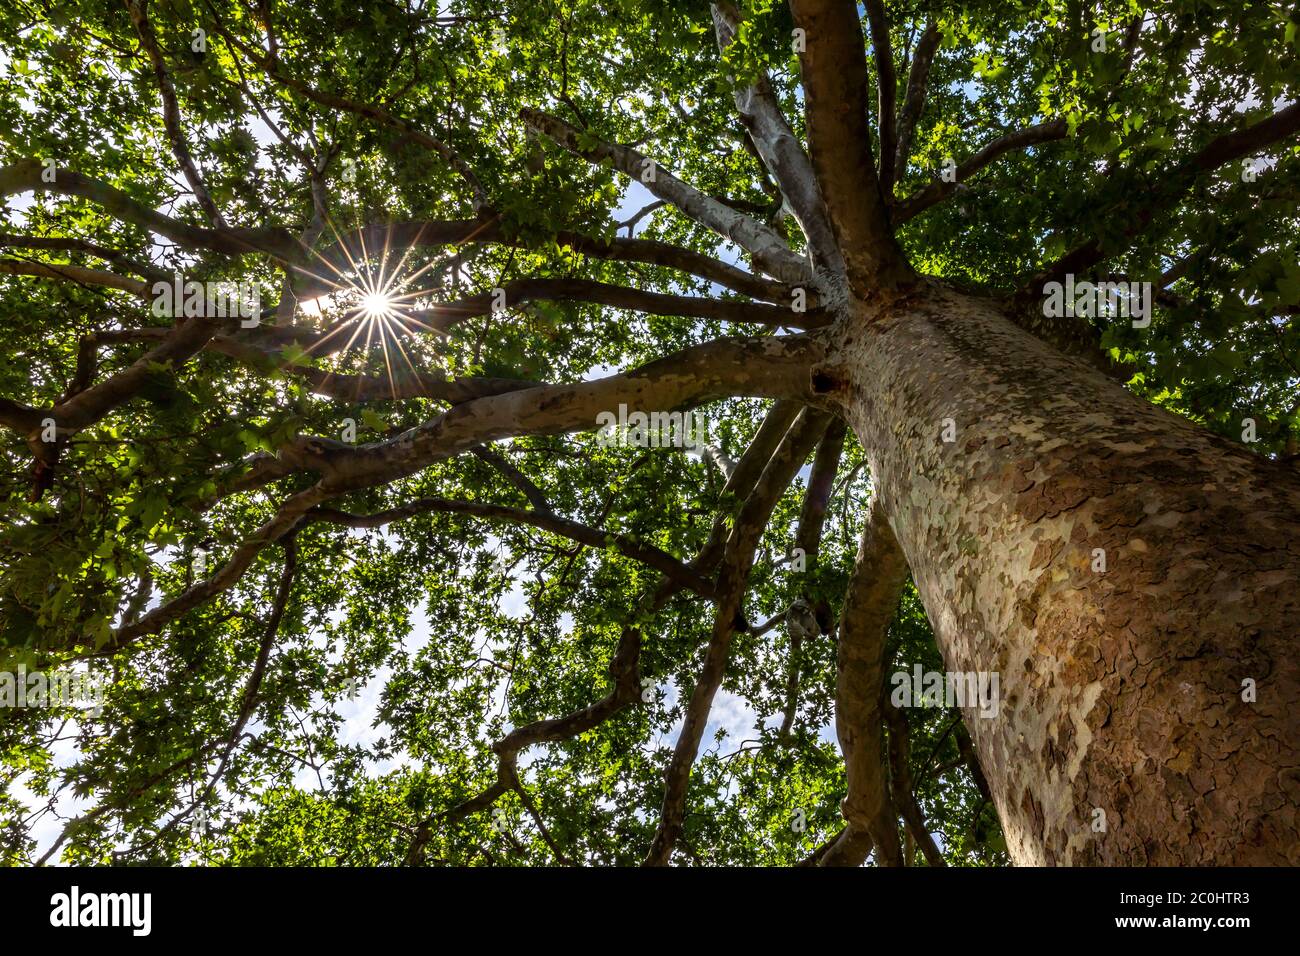 Platane dans le jardin des plantes à Paris. Cet arbre a été désigné comme un arbre remarquable en raison de son âge (235 ans) Banque D'Images